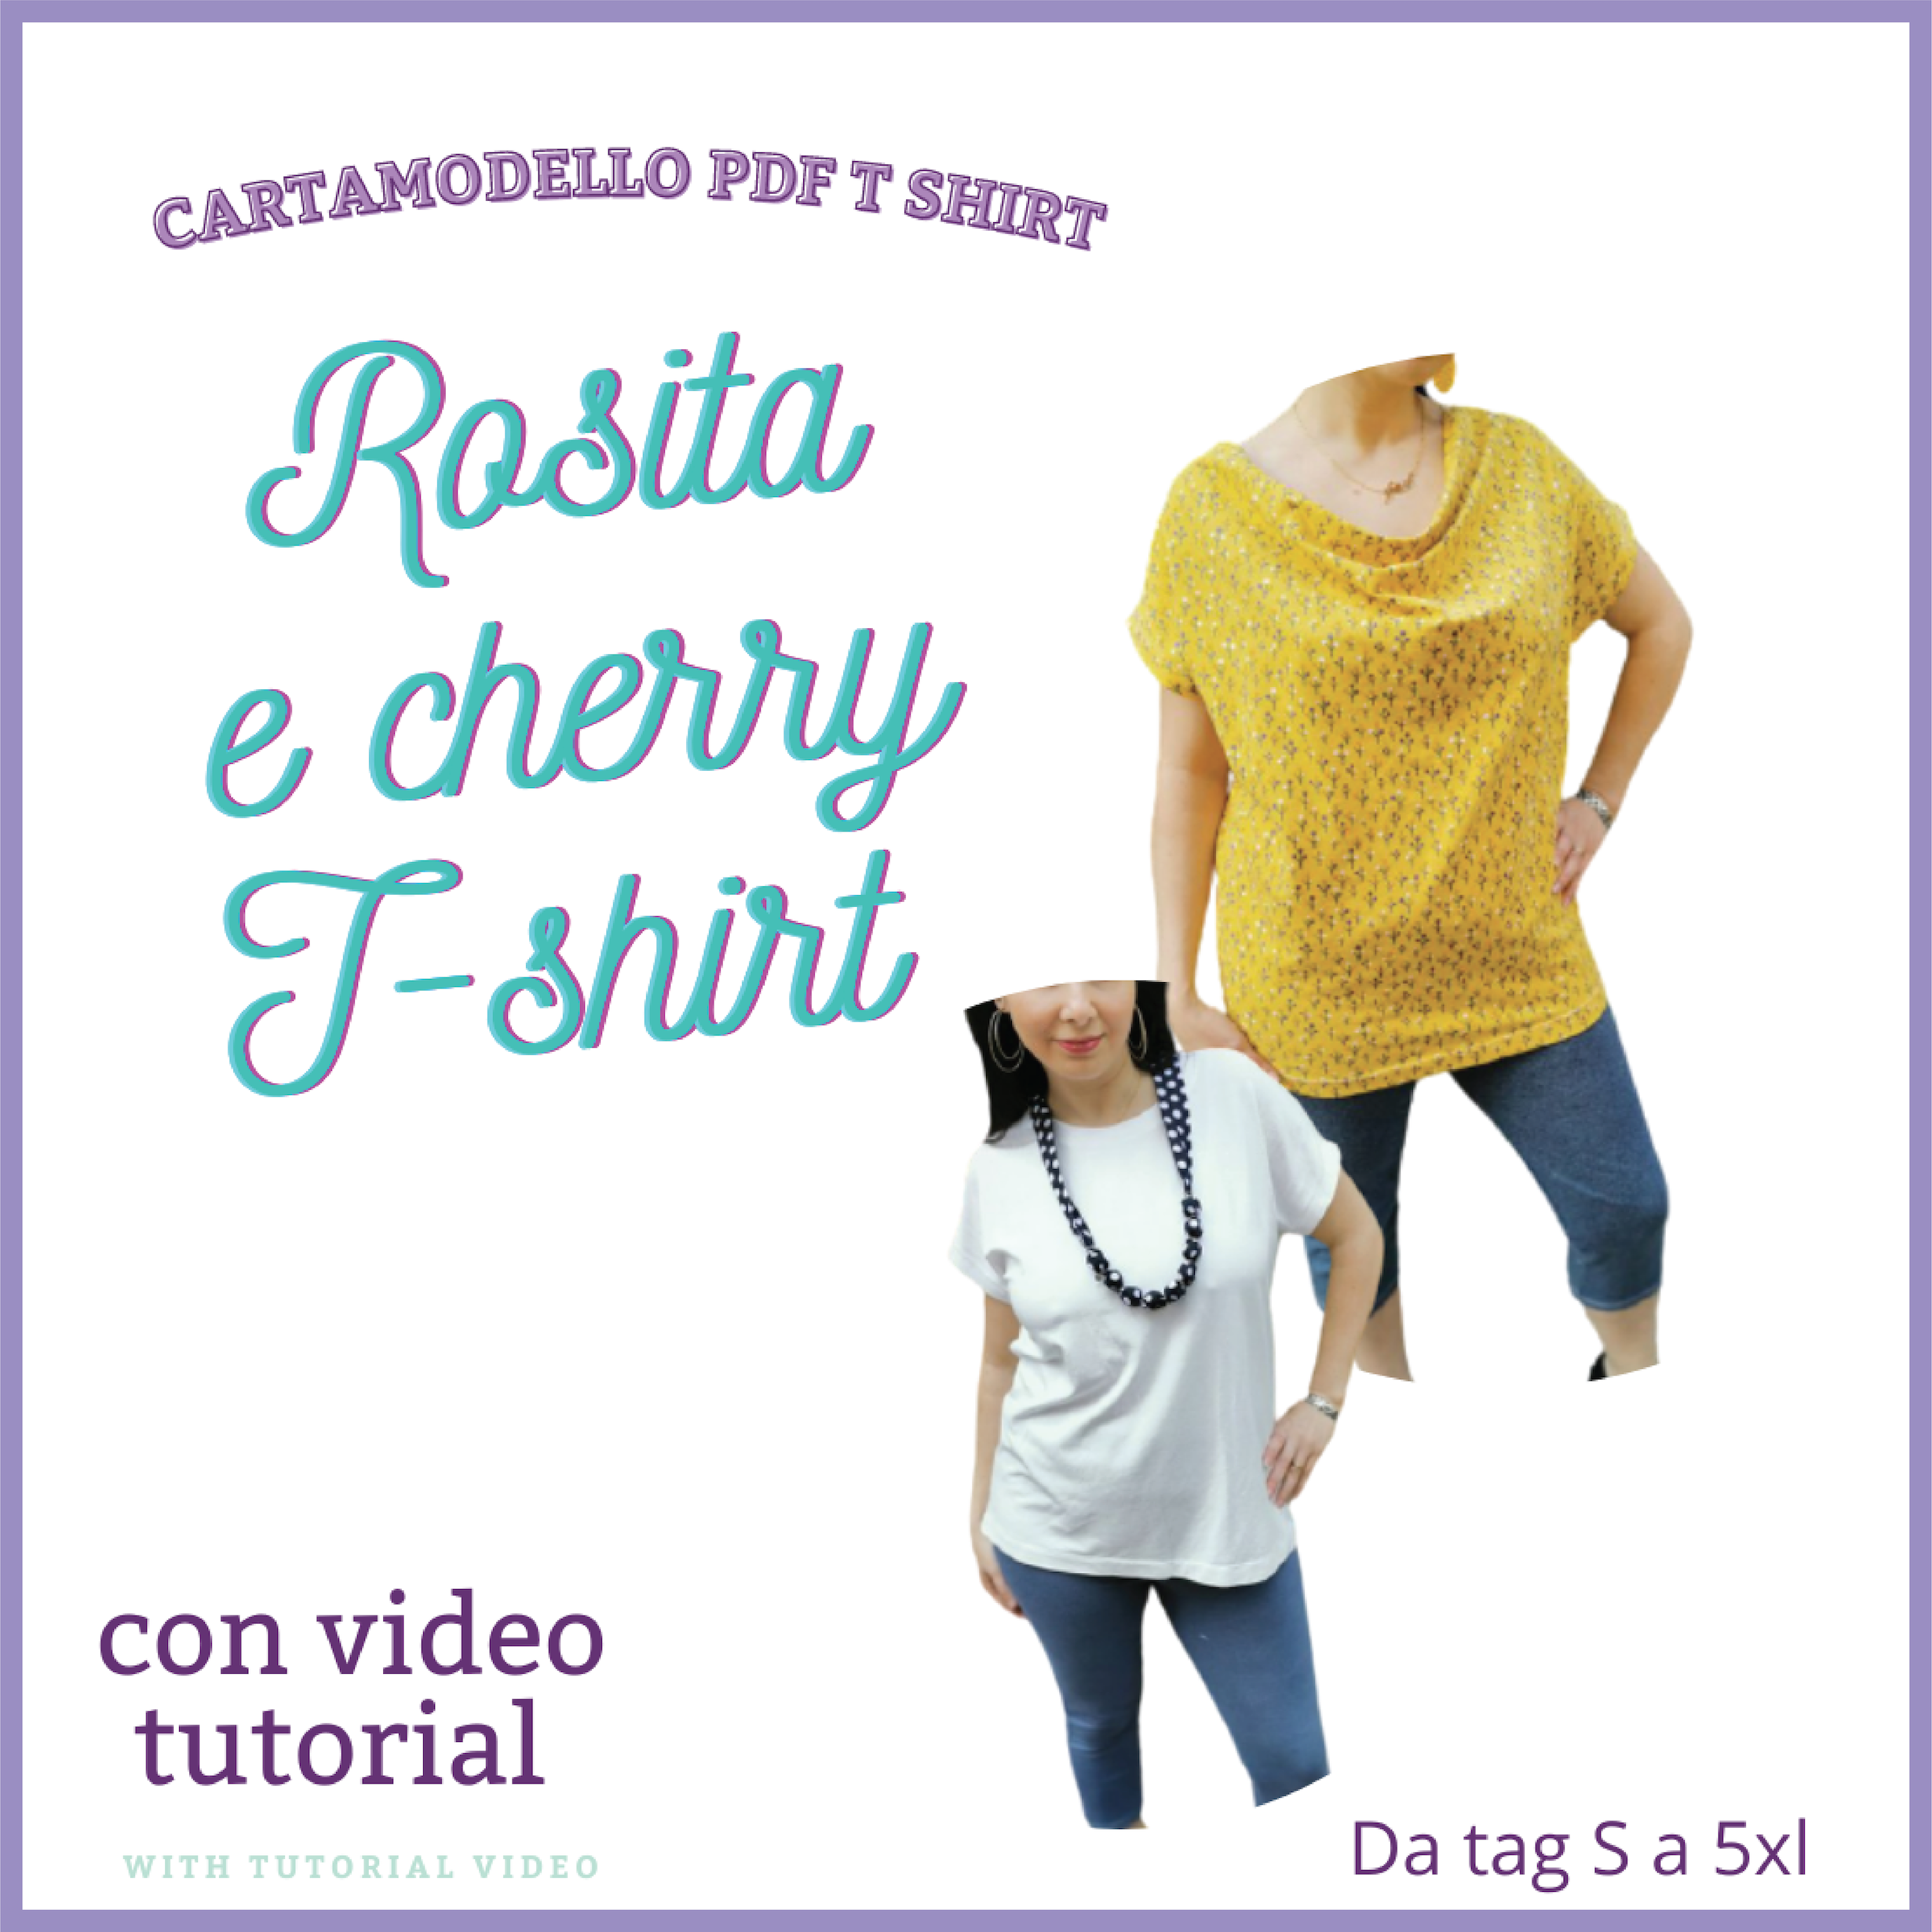 T shirt CARTAMODELLO PDF donna due versioni cherry e Rosita